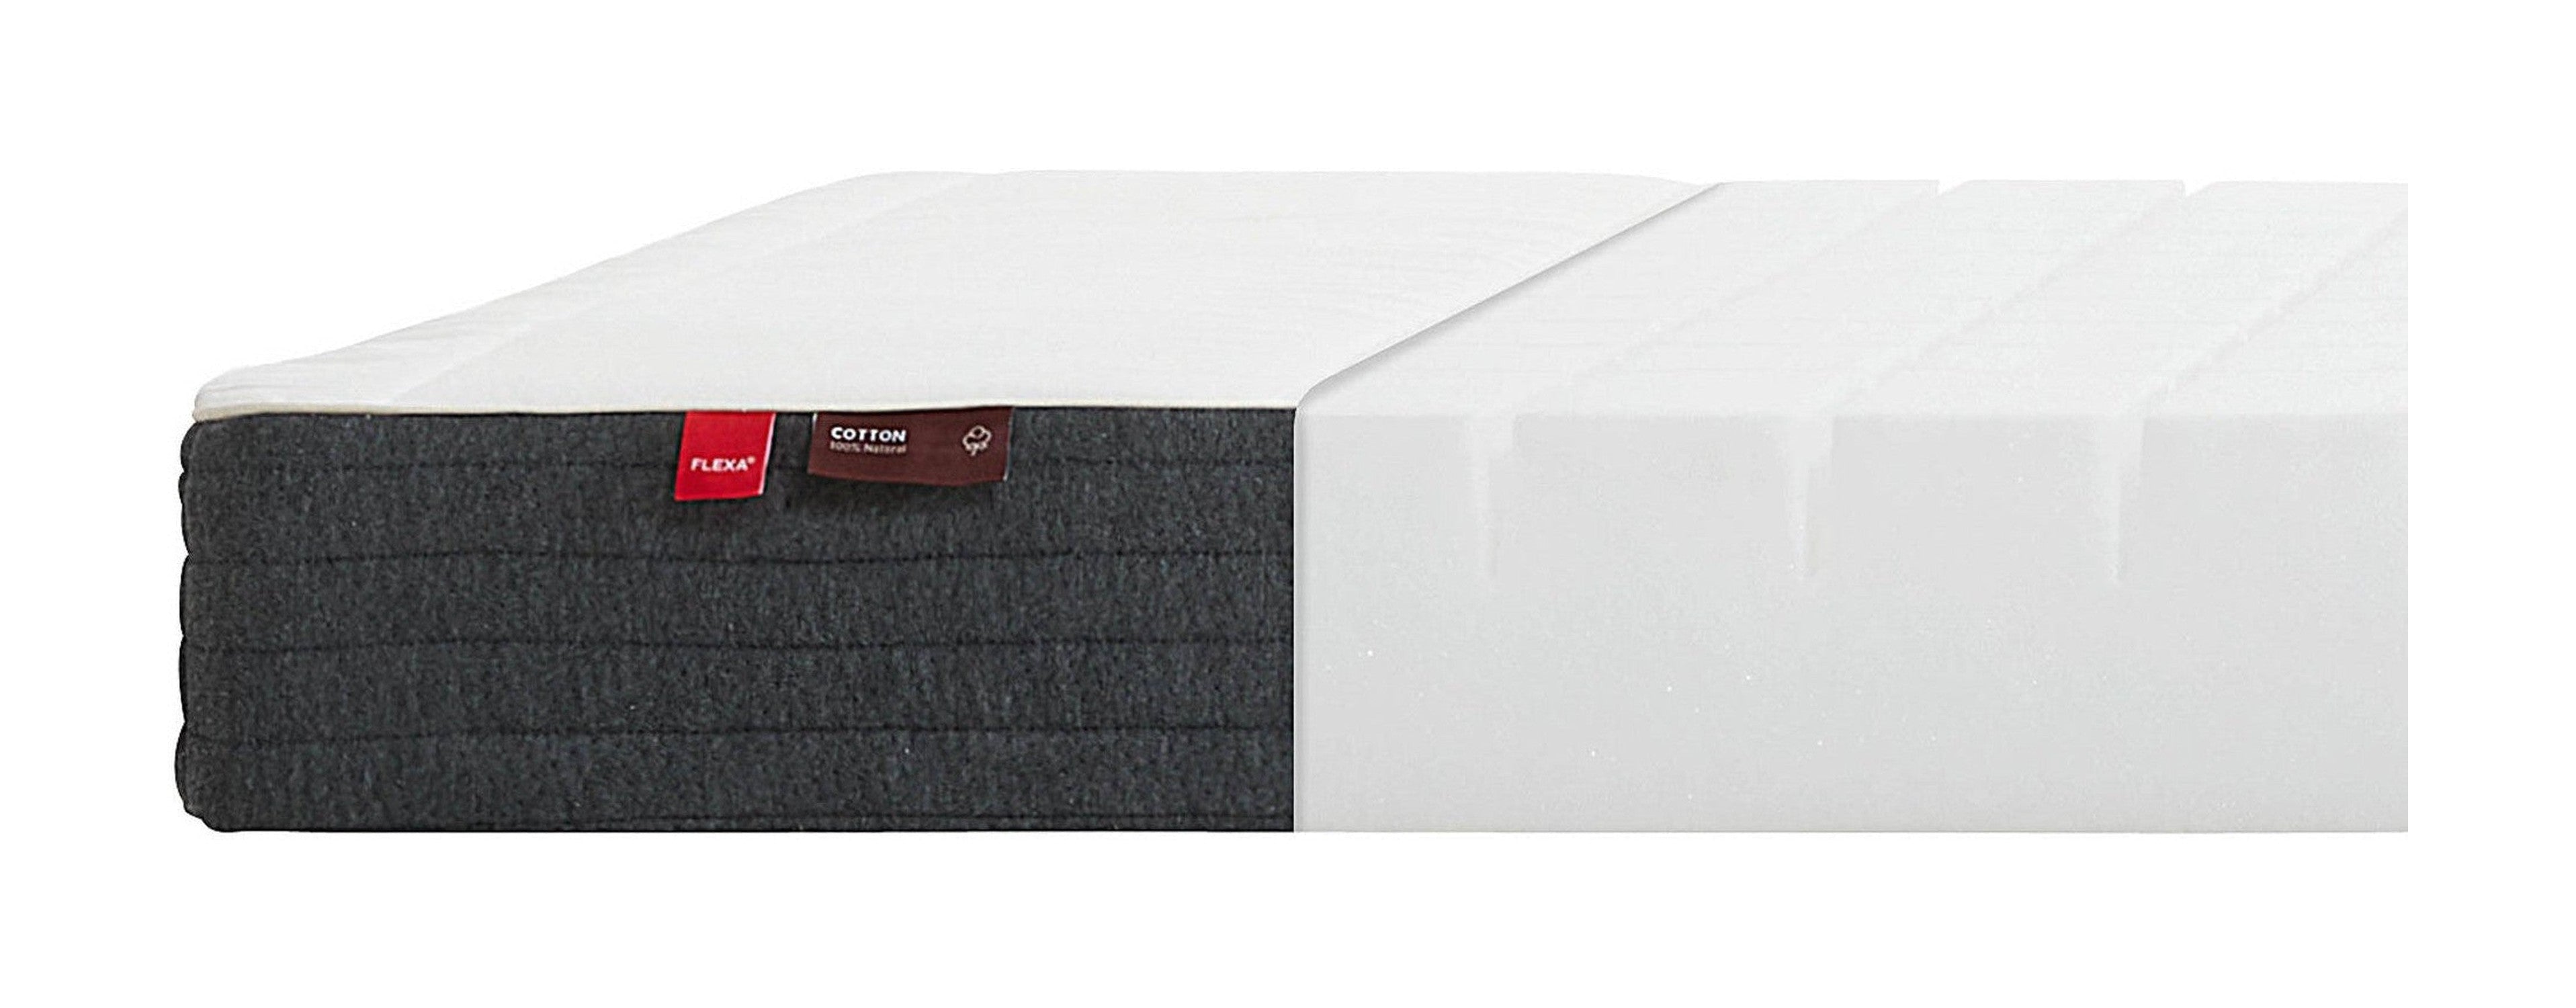 FLEXA FLEXA foam mattress, 190X90 cotton cover